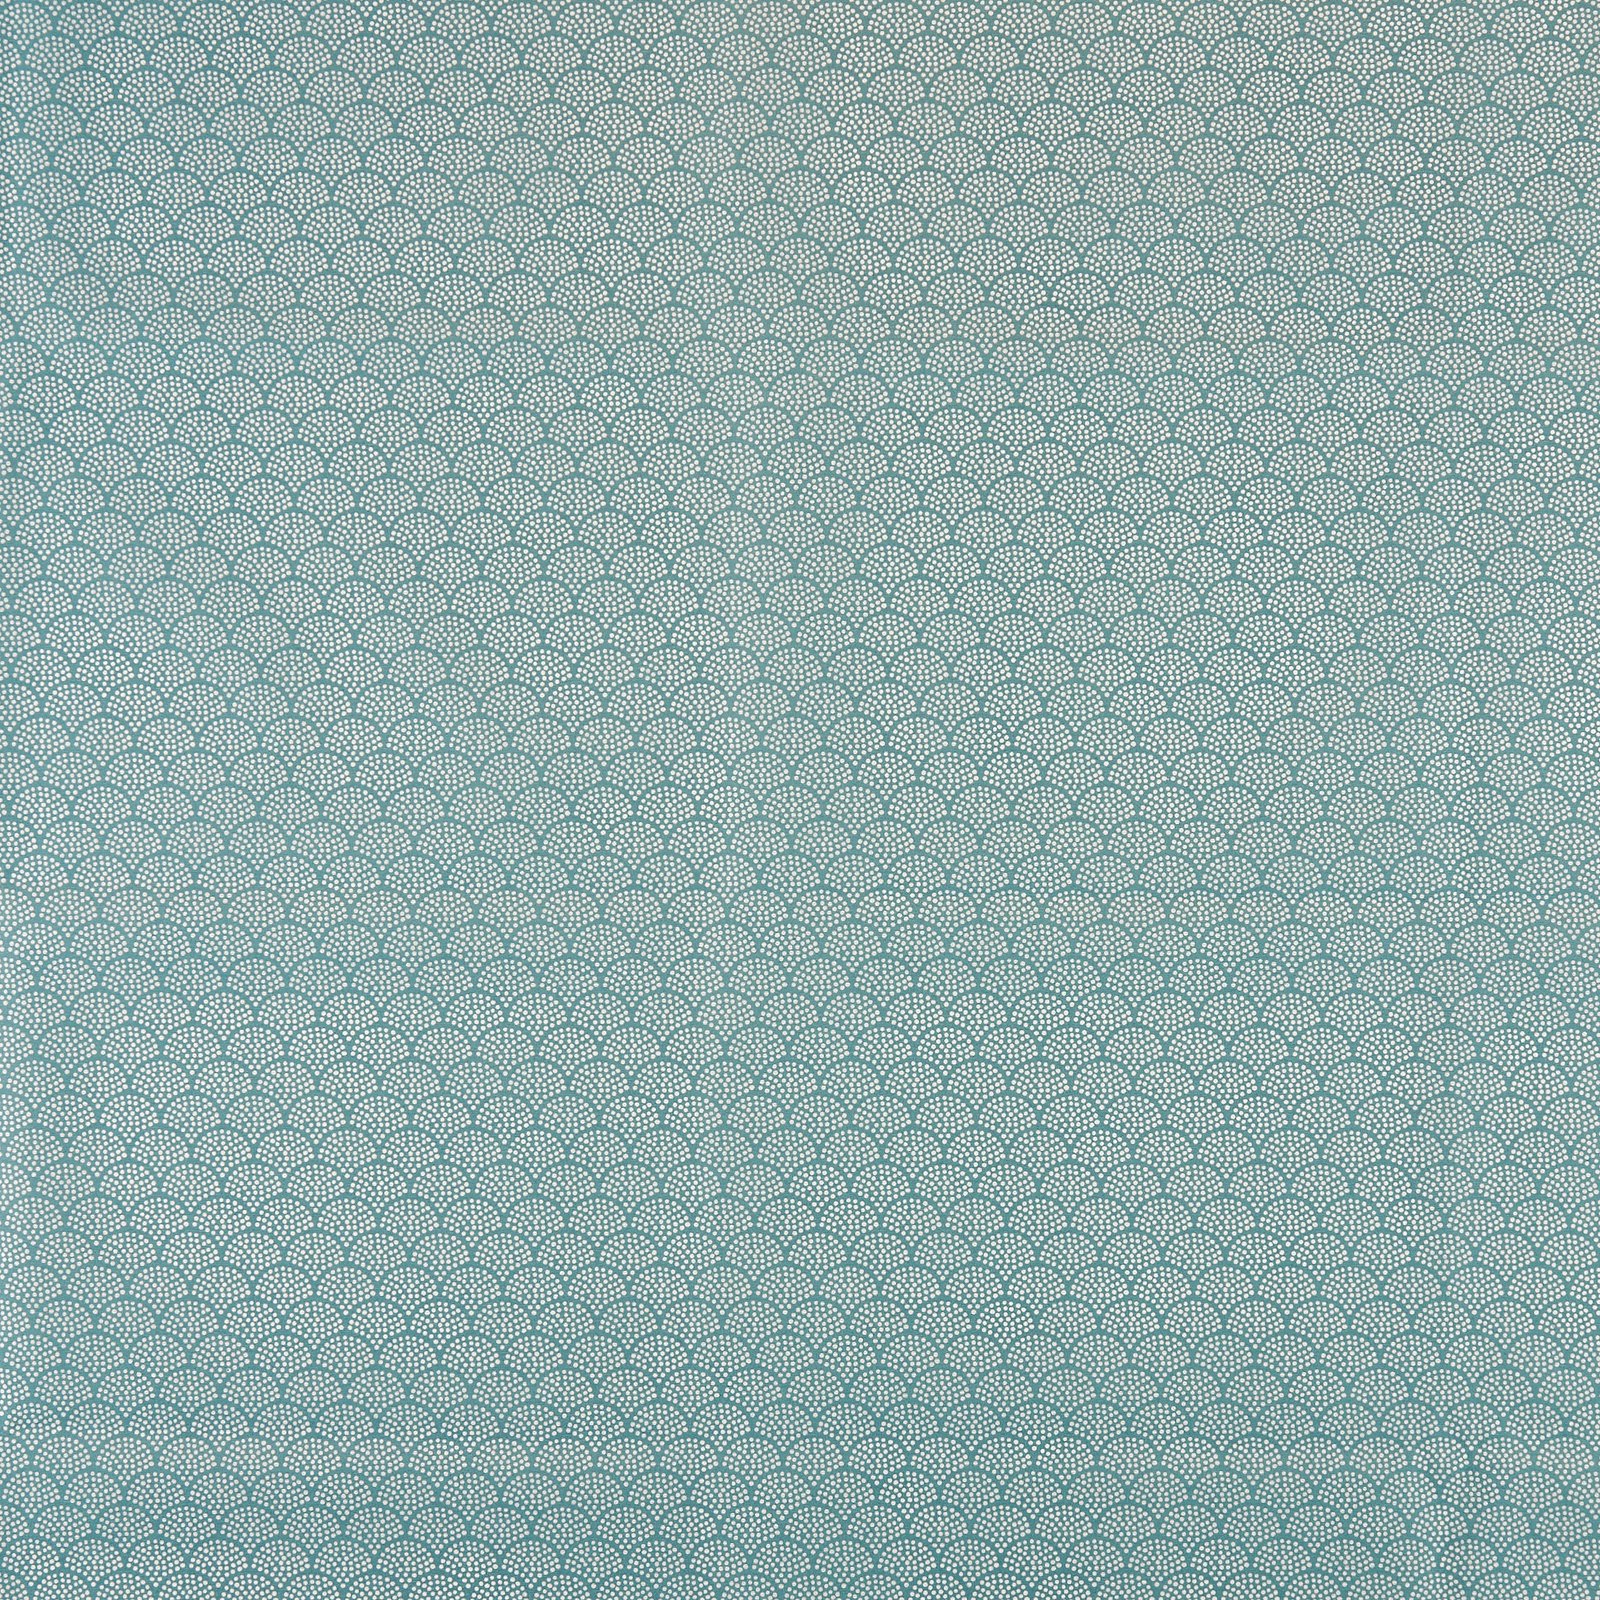 Textilwachstuch, blau/weiße Bögen 870345_pack_sp